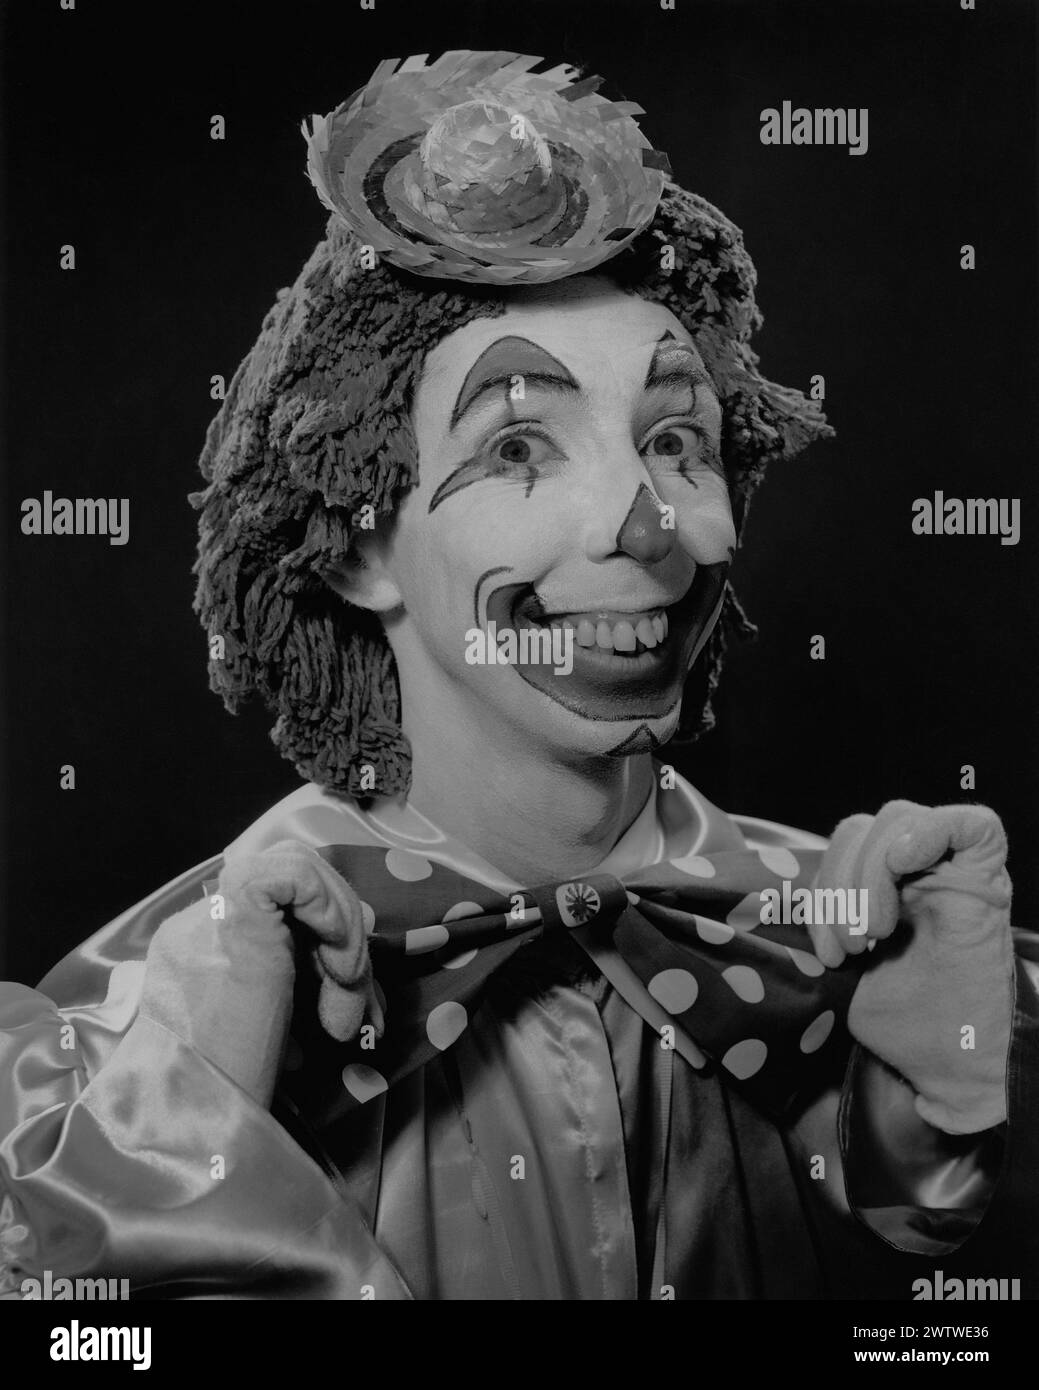 Nahaufnahme eines Mannes in einem Clown-Outfit, Gesicht bemalt, große Bowtie, Moppkopf und einen Mini-Strohhut auf dem Kopf Stockfoto